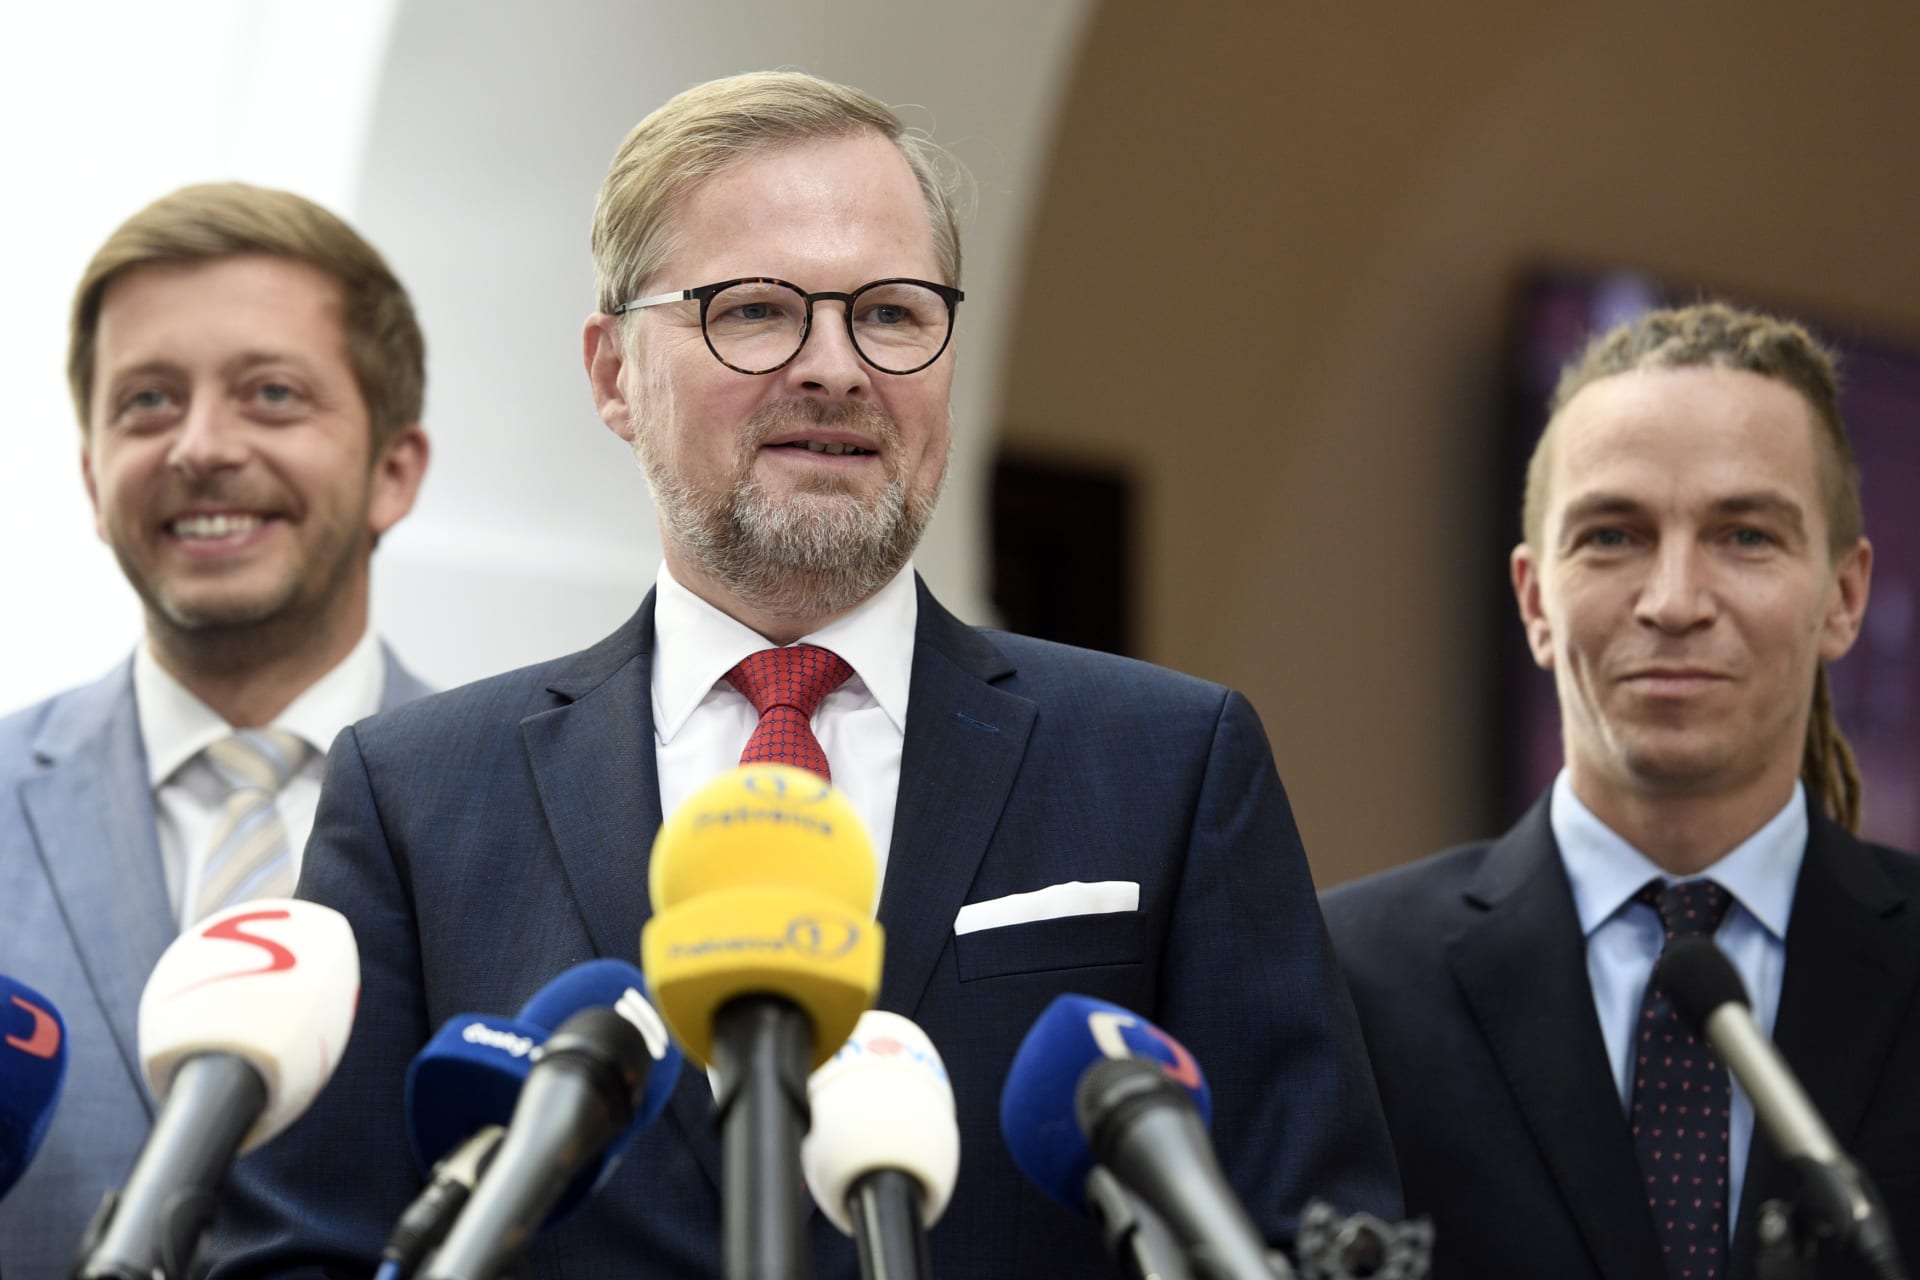 Předsedové opozičních stran na společném vystoupení Vít Rakušan (STAN, zleva), Petr Fiala (ODS) a Ivan Bartoš (Piráti)